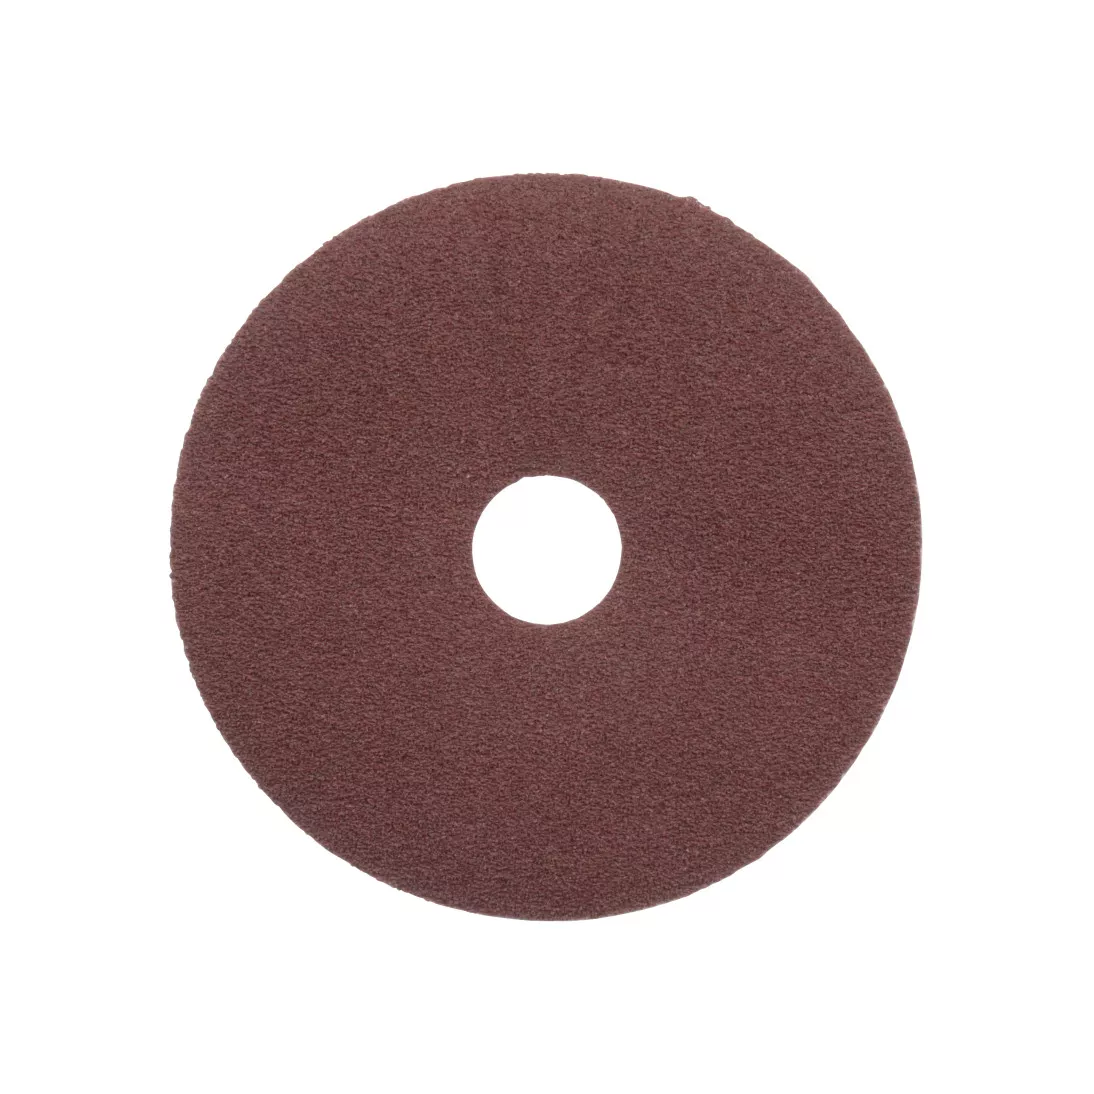 Standard Abrasives™ A/O Resin Fiber Disc, 530005, 4-1/2 in x 7/8 in 60,
25 per inner 100 per case